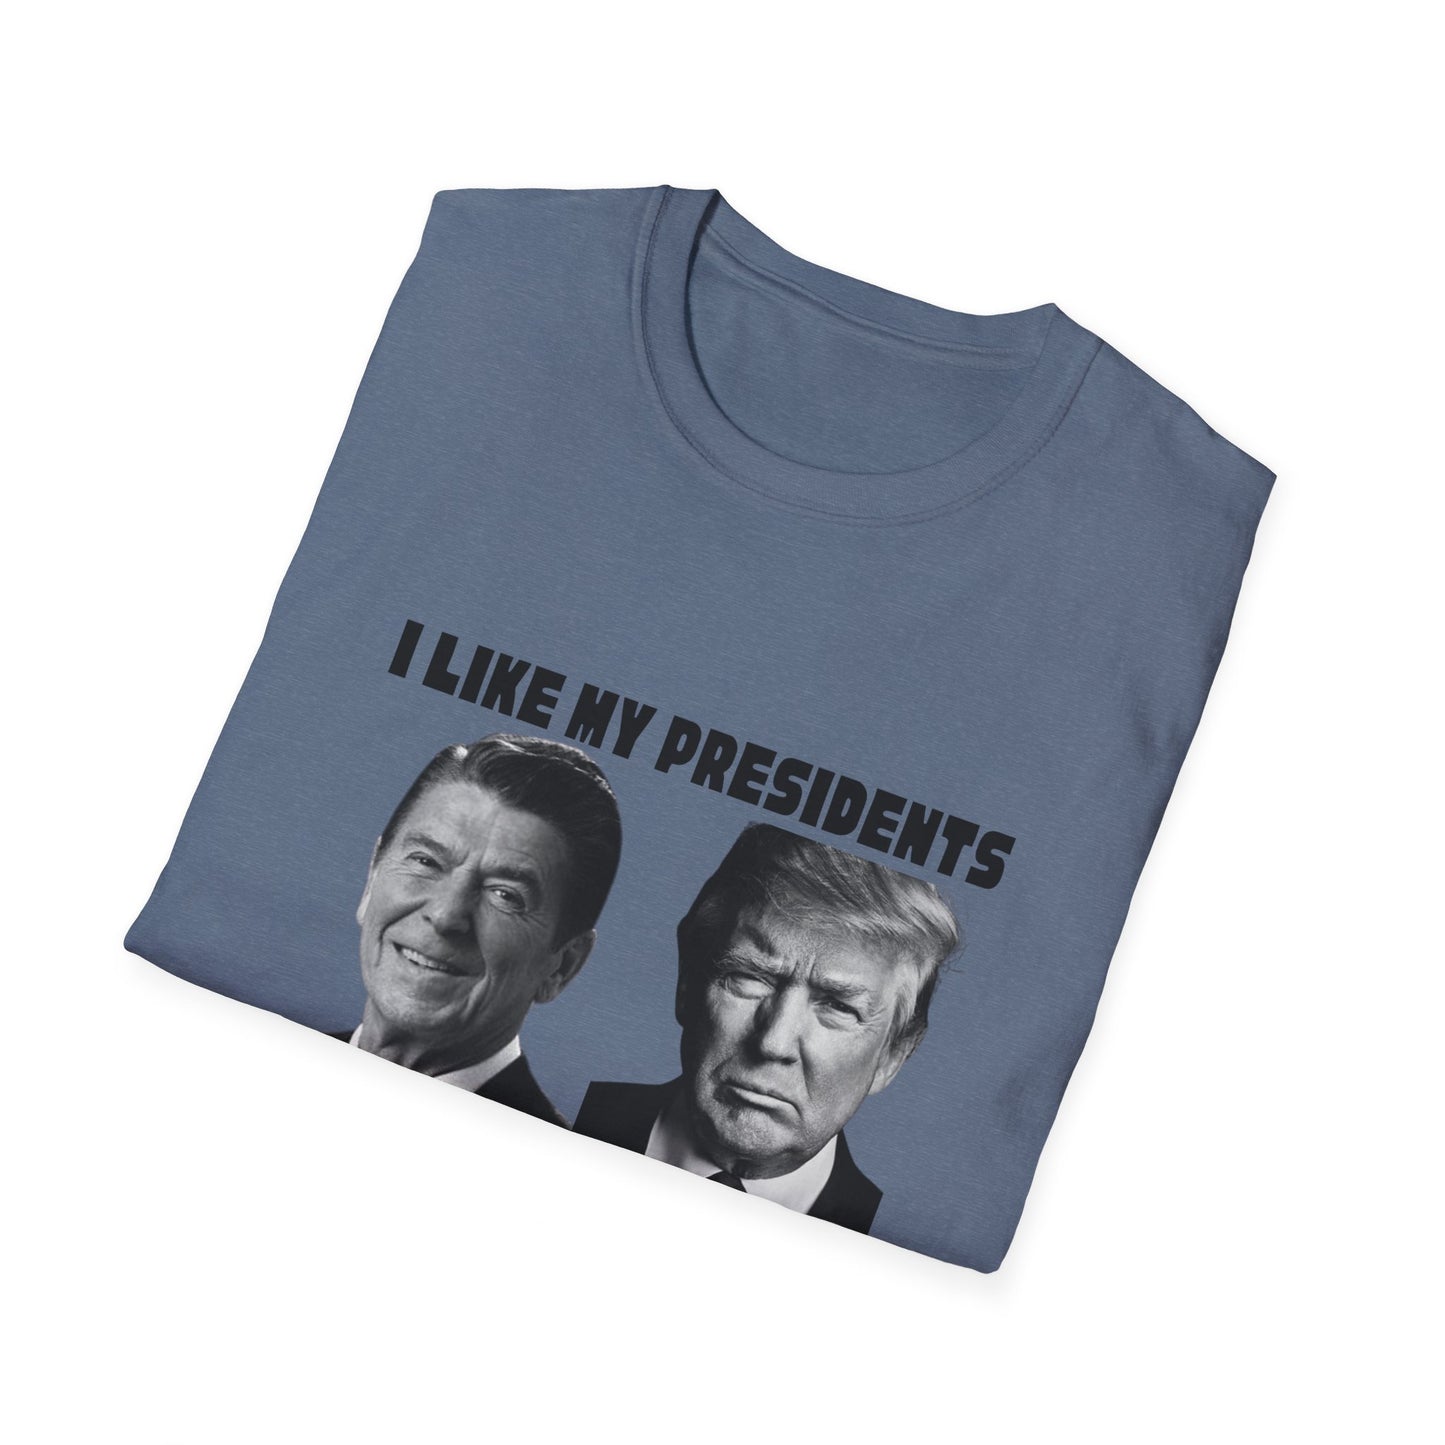 I Like My Presidents Men's Tshirt (Black Logo)